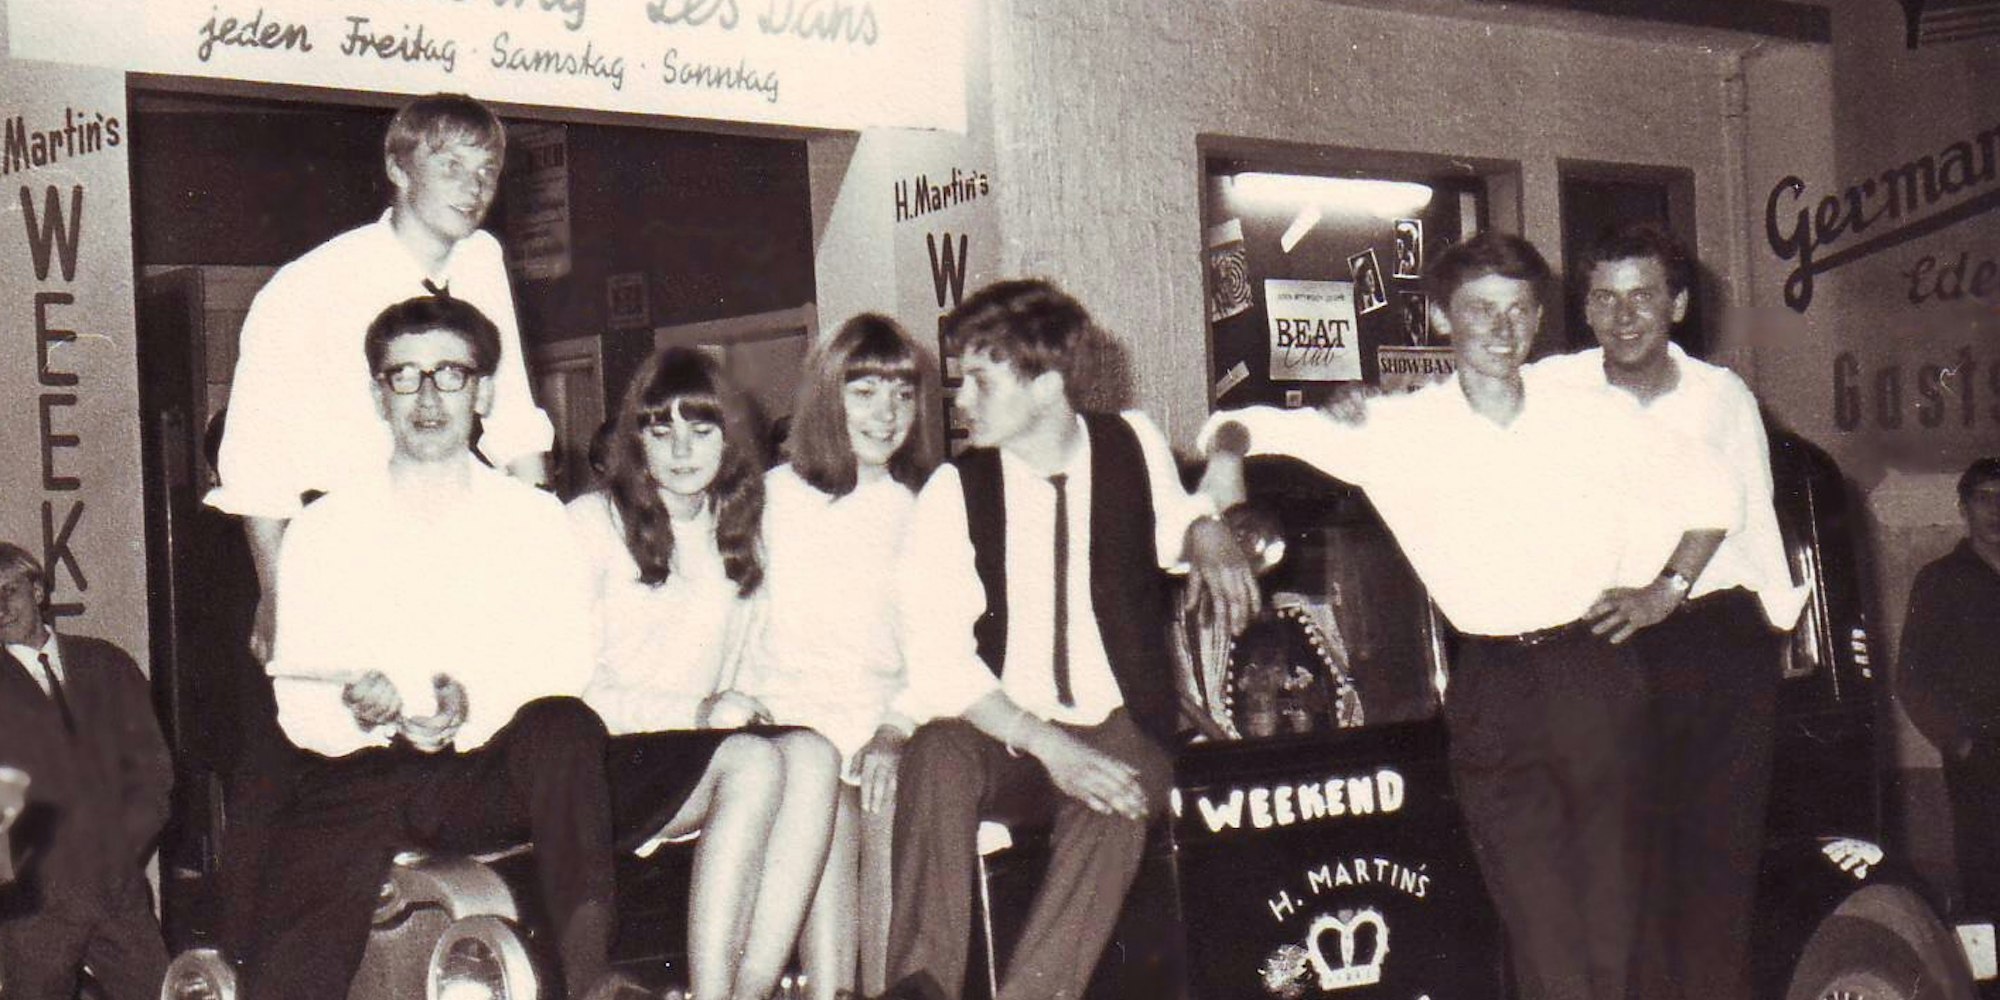 Für die Alfterer Band „Cortingas“ war das Weekend in den 60er Jahren ein wichtiger Auftrittsort.